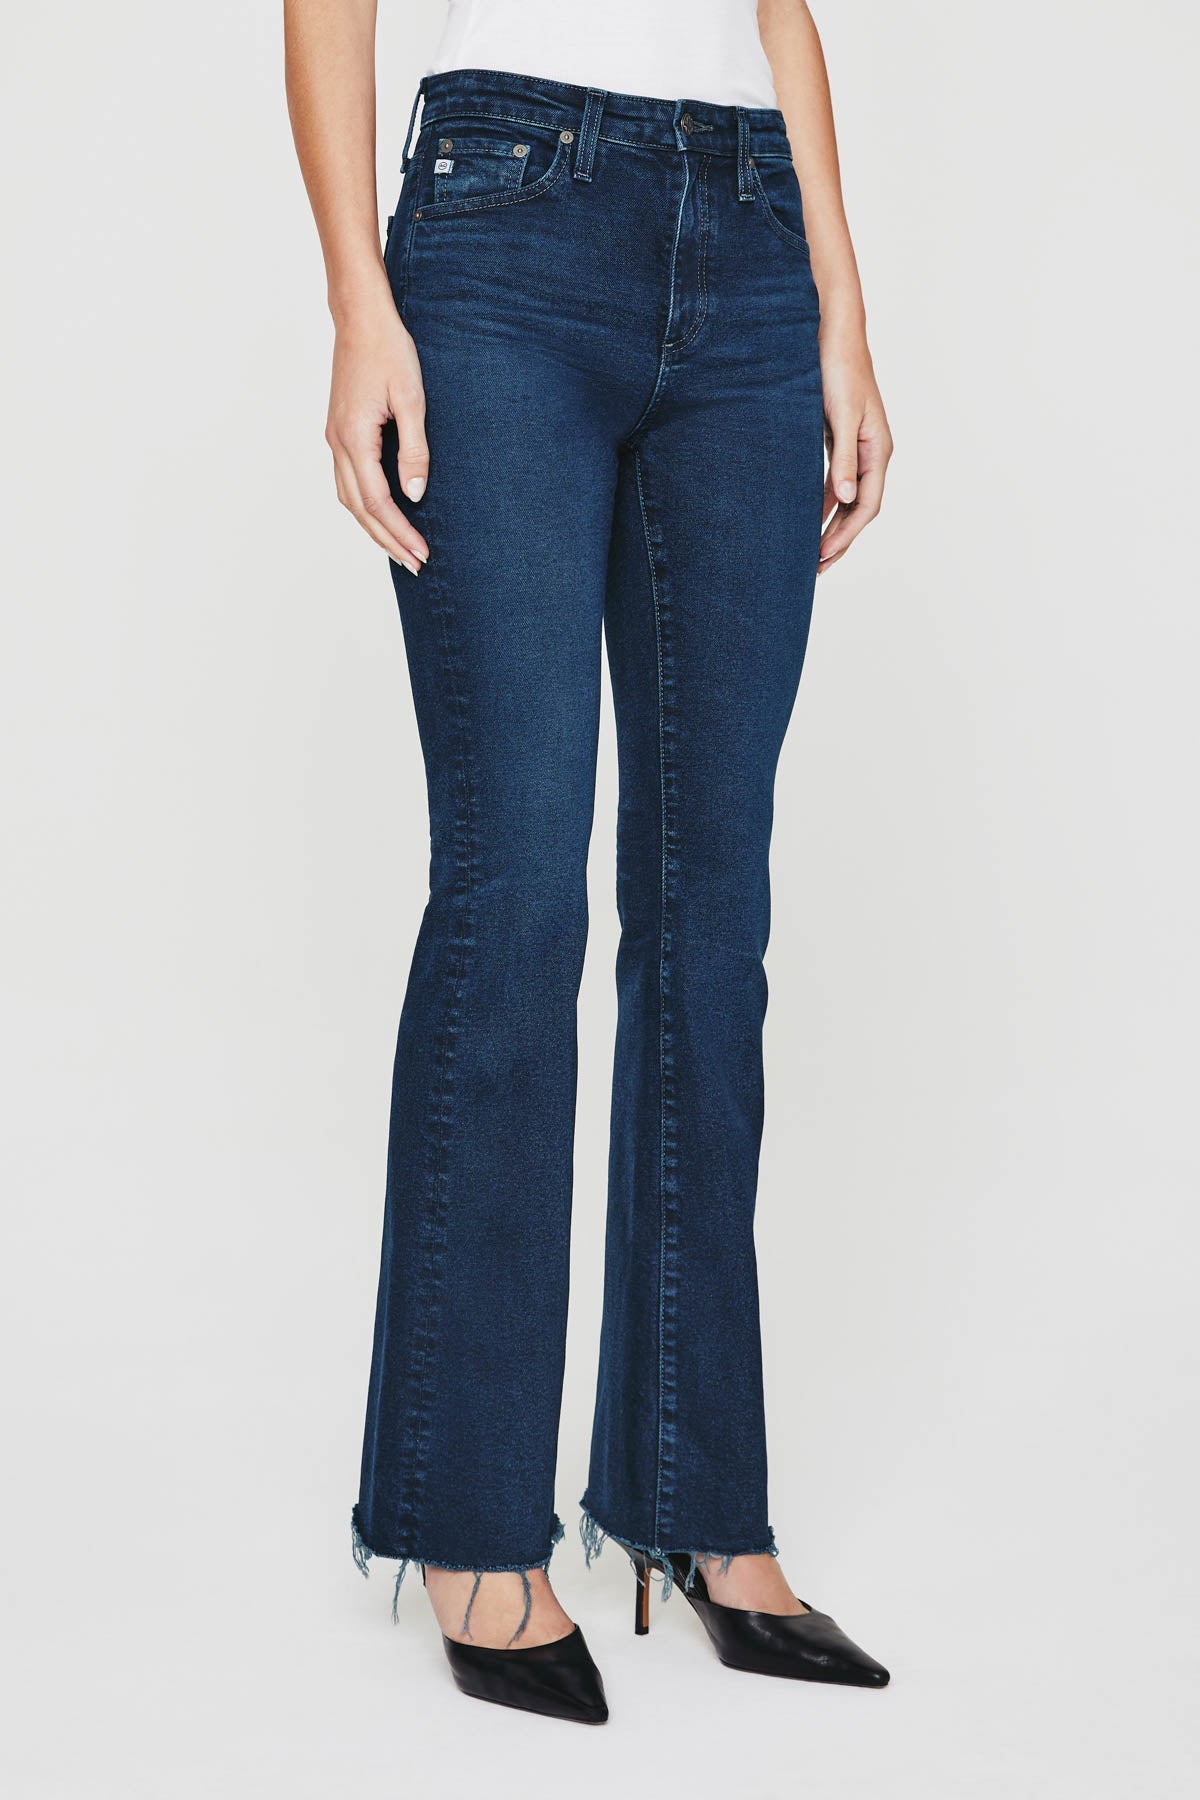 Farrah High Rise Boot Cut Jean - AG Jeans - Danali - CCS1B83VN-03YICO-25